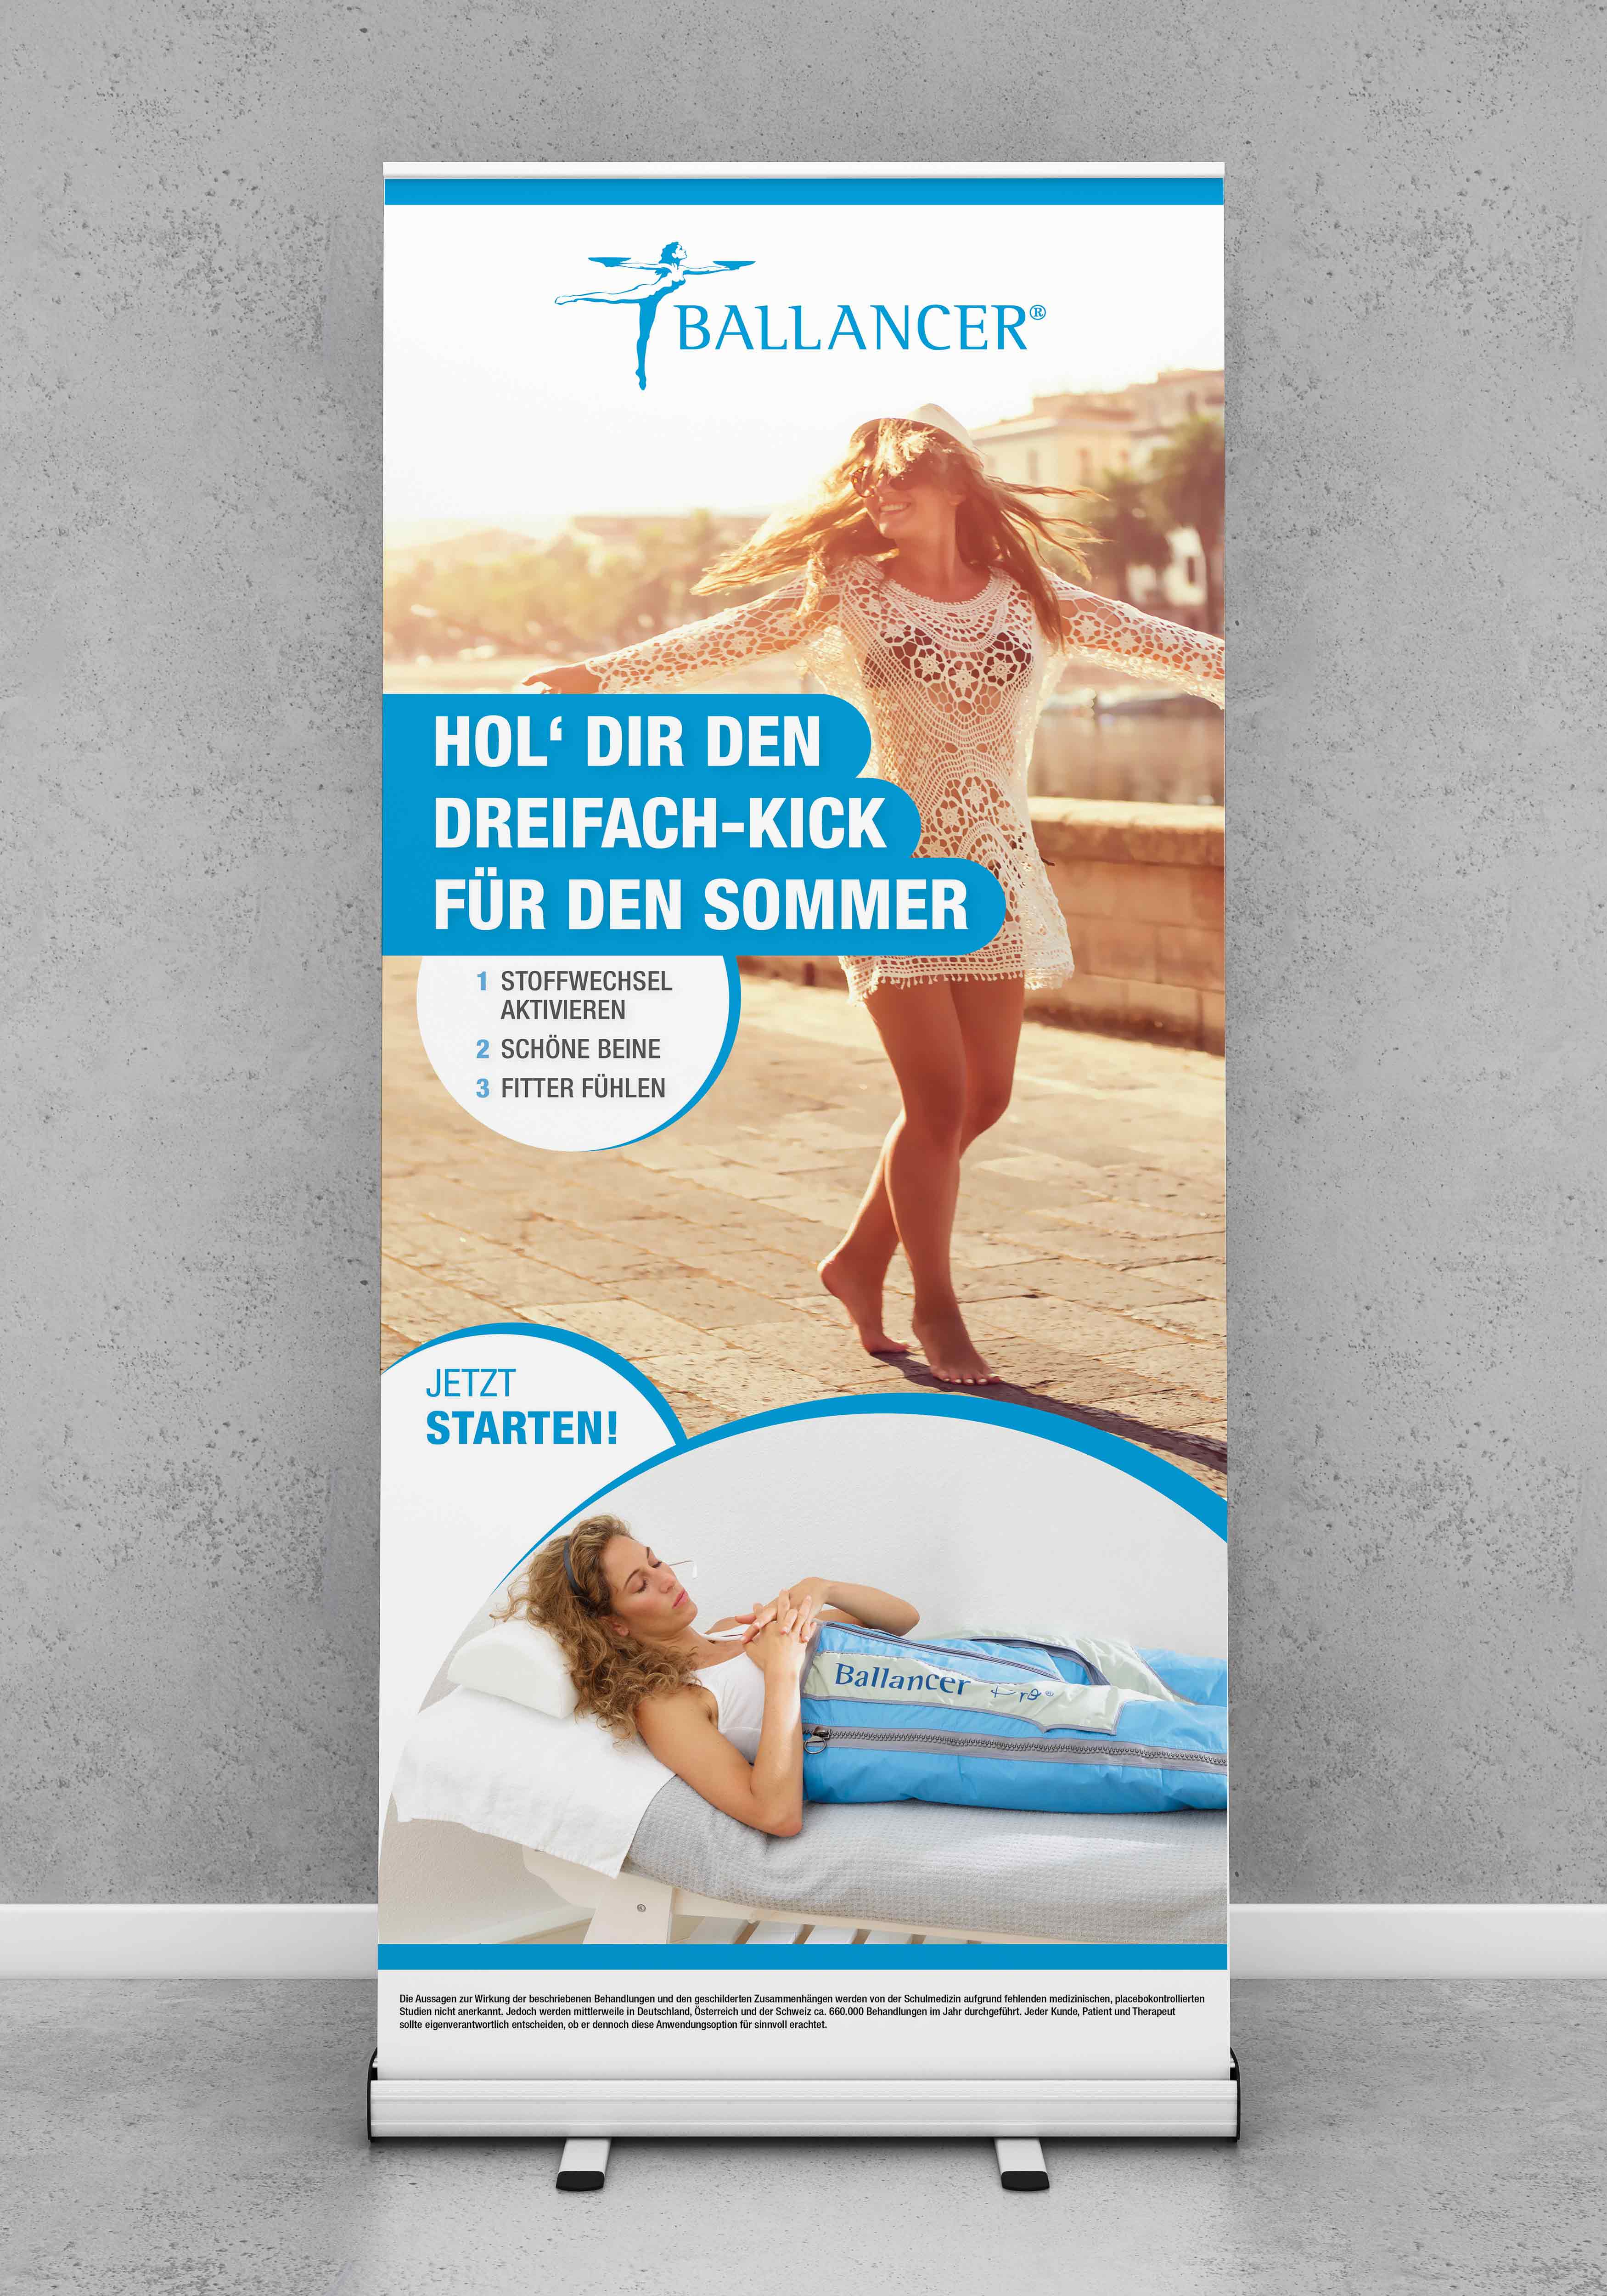 Roll-Up Kampagne "Dreifach-Kick für den Sommer"